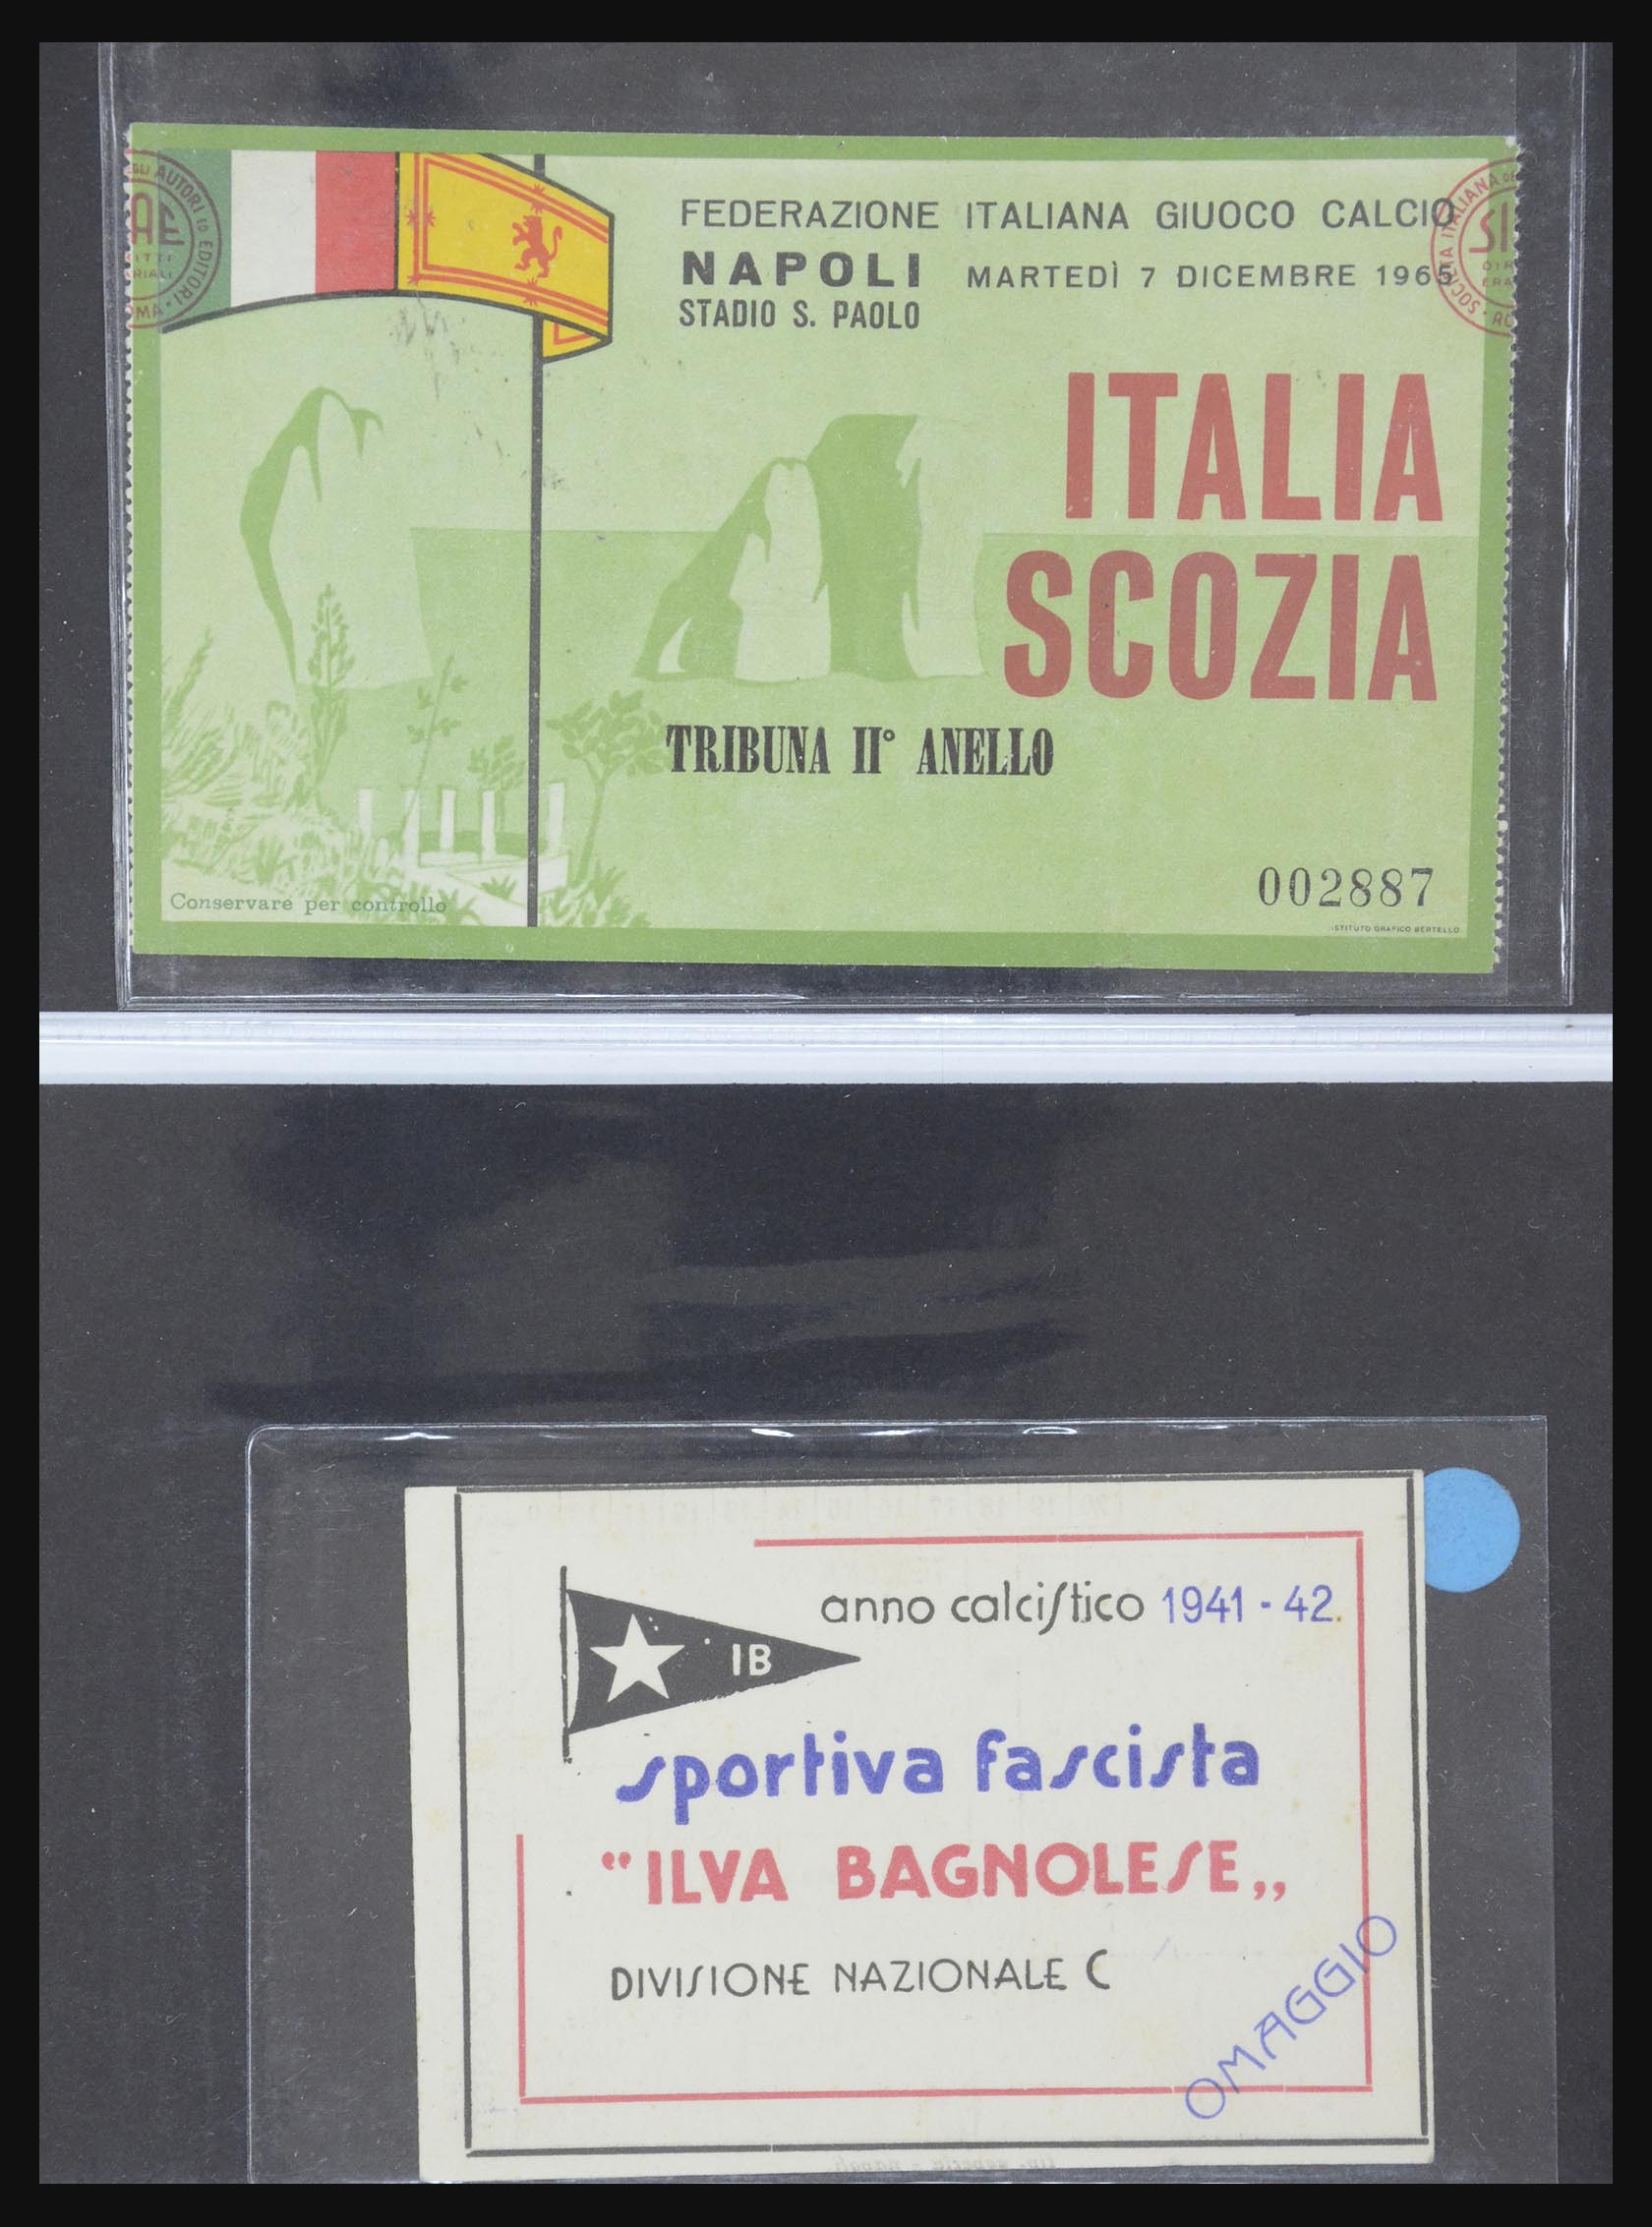 32246 003 - 32246 Italy football, cycling, sports 1900-1988.